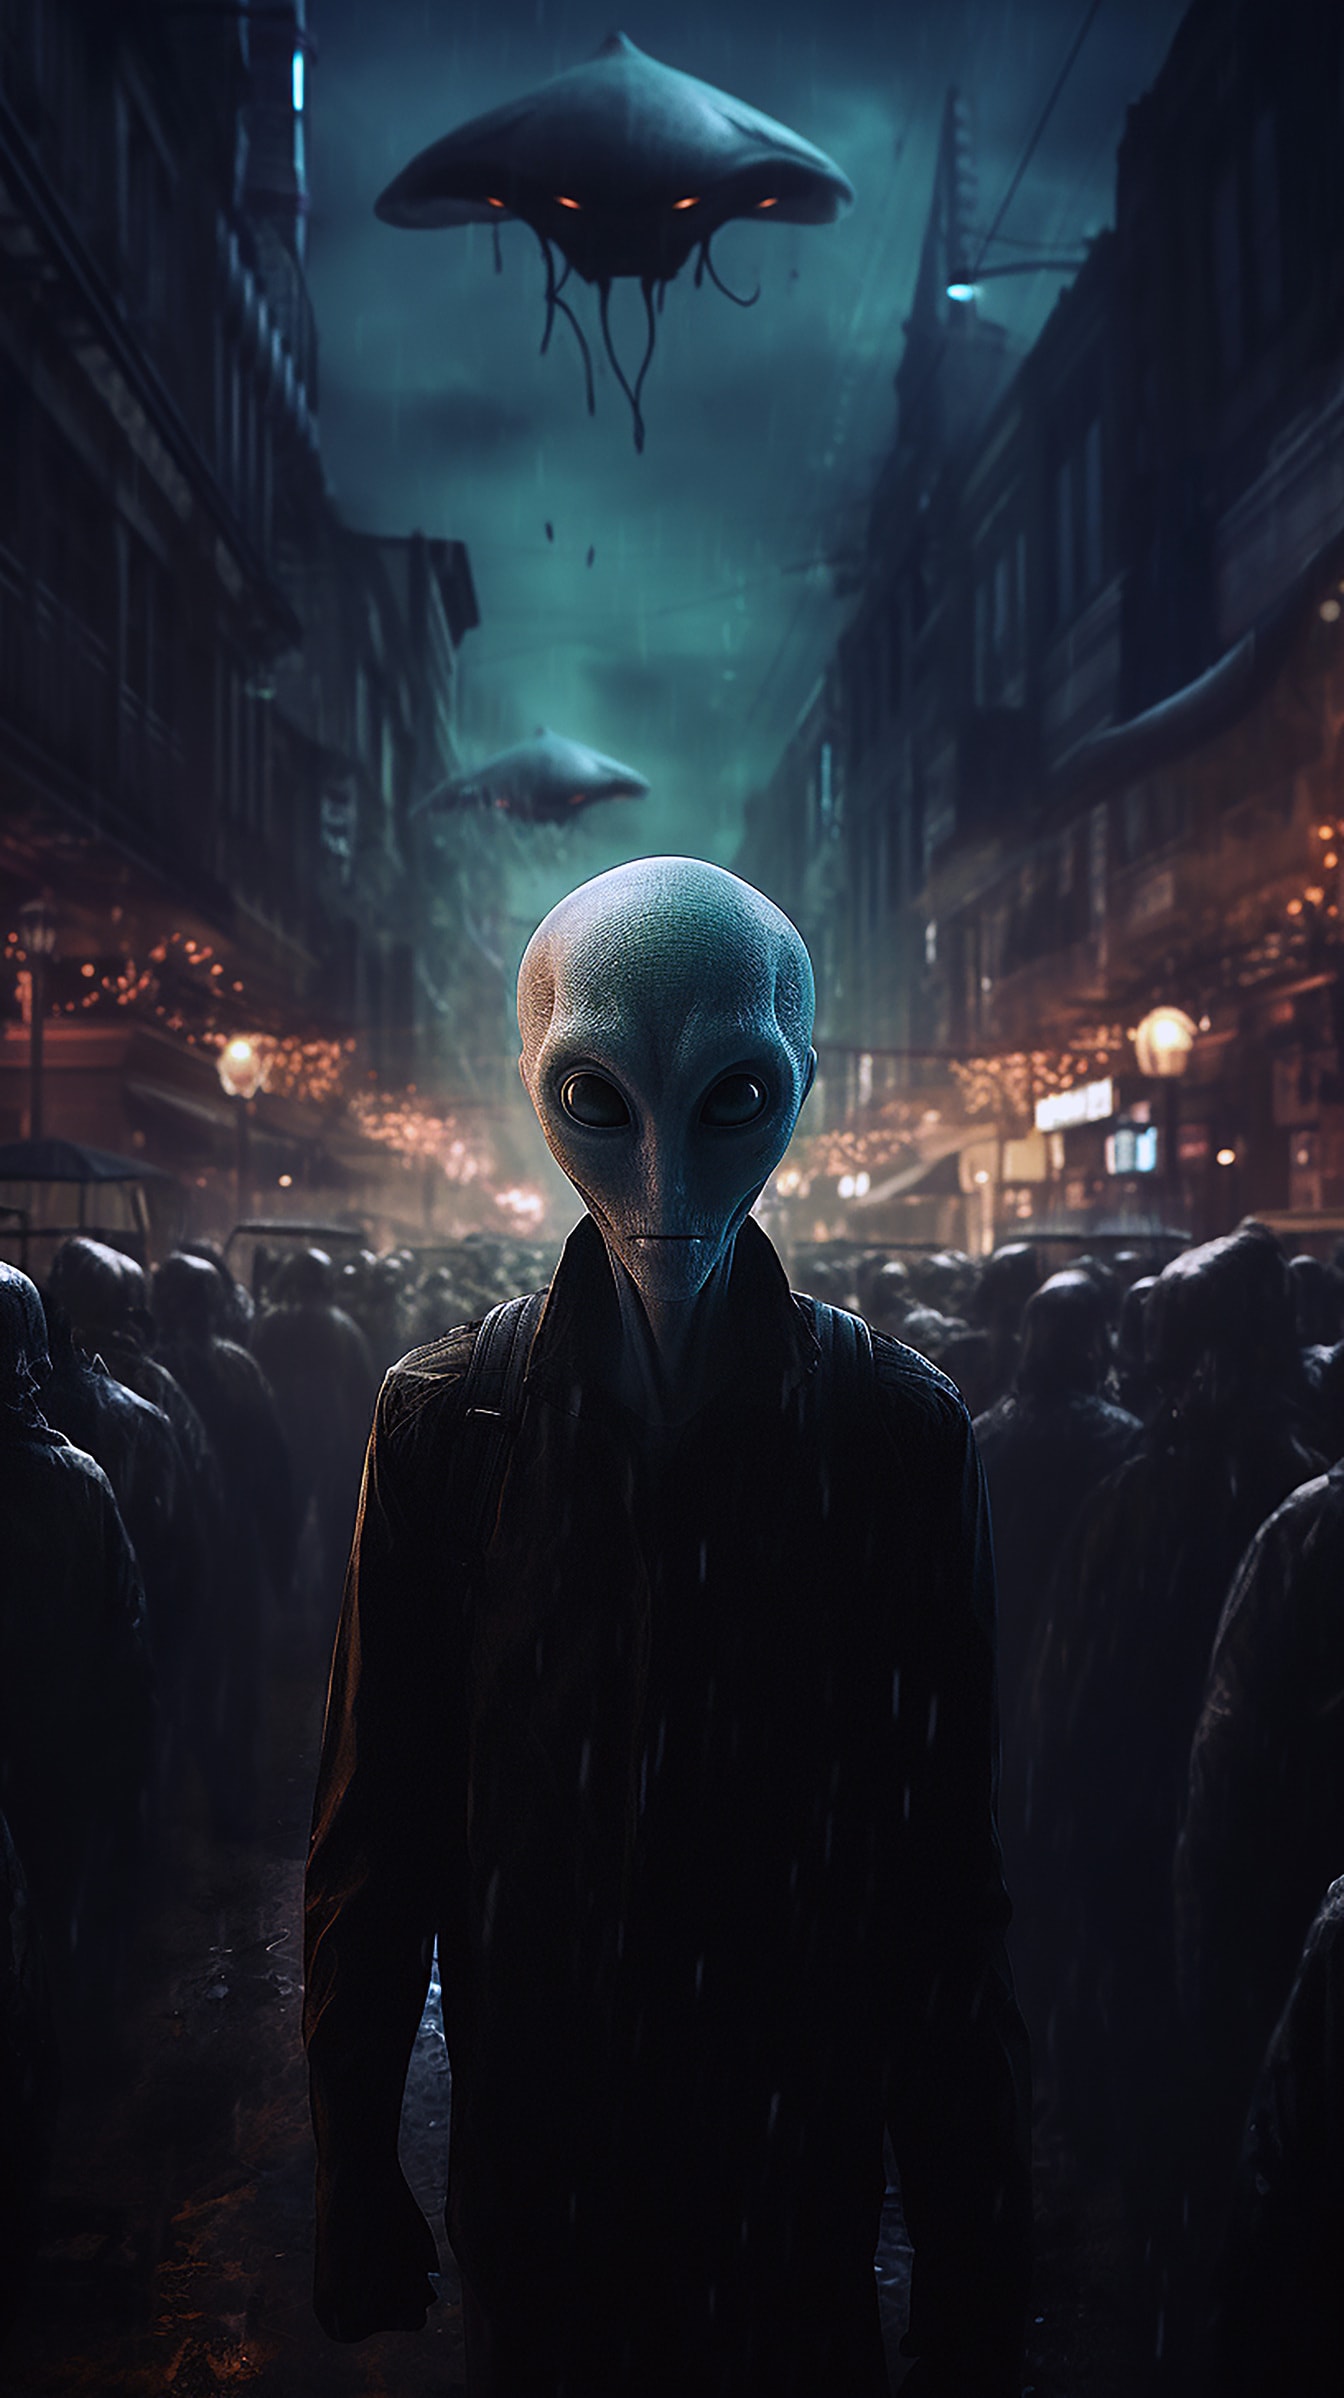 Humanoider Außerirdischer auf der Straße bei Nacht Fantasy-Horror-Illustration